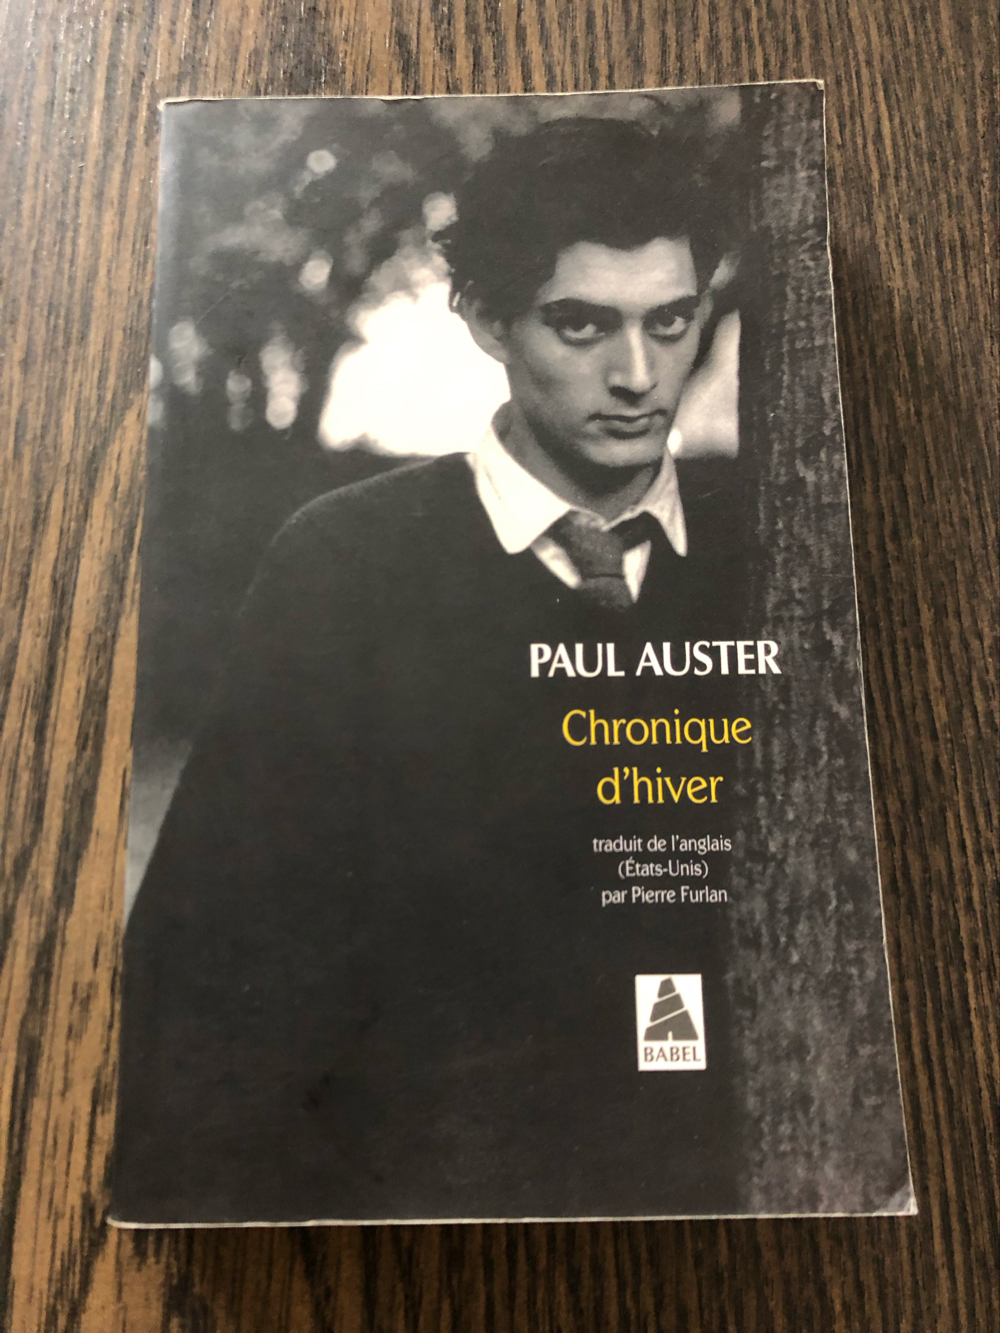 Chronique d'hiver, Paul Auster